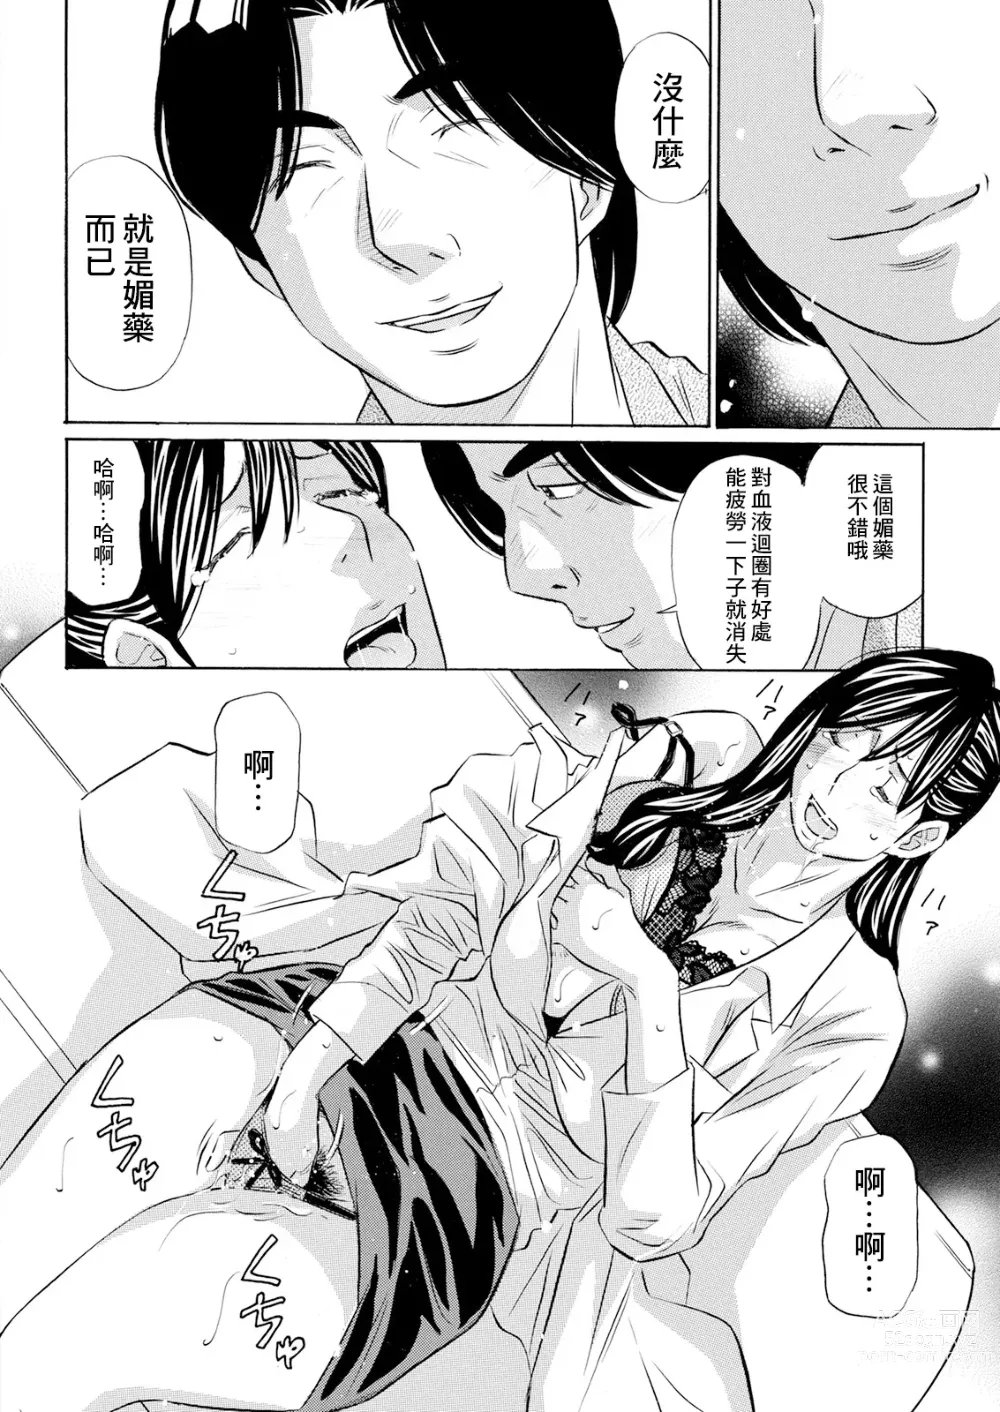 Page 8 of manga Biyaku Shohousen